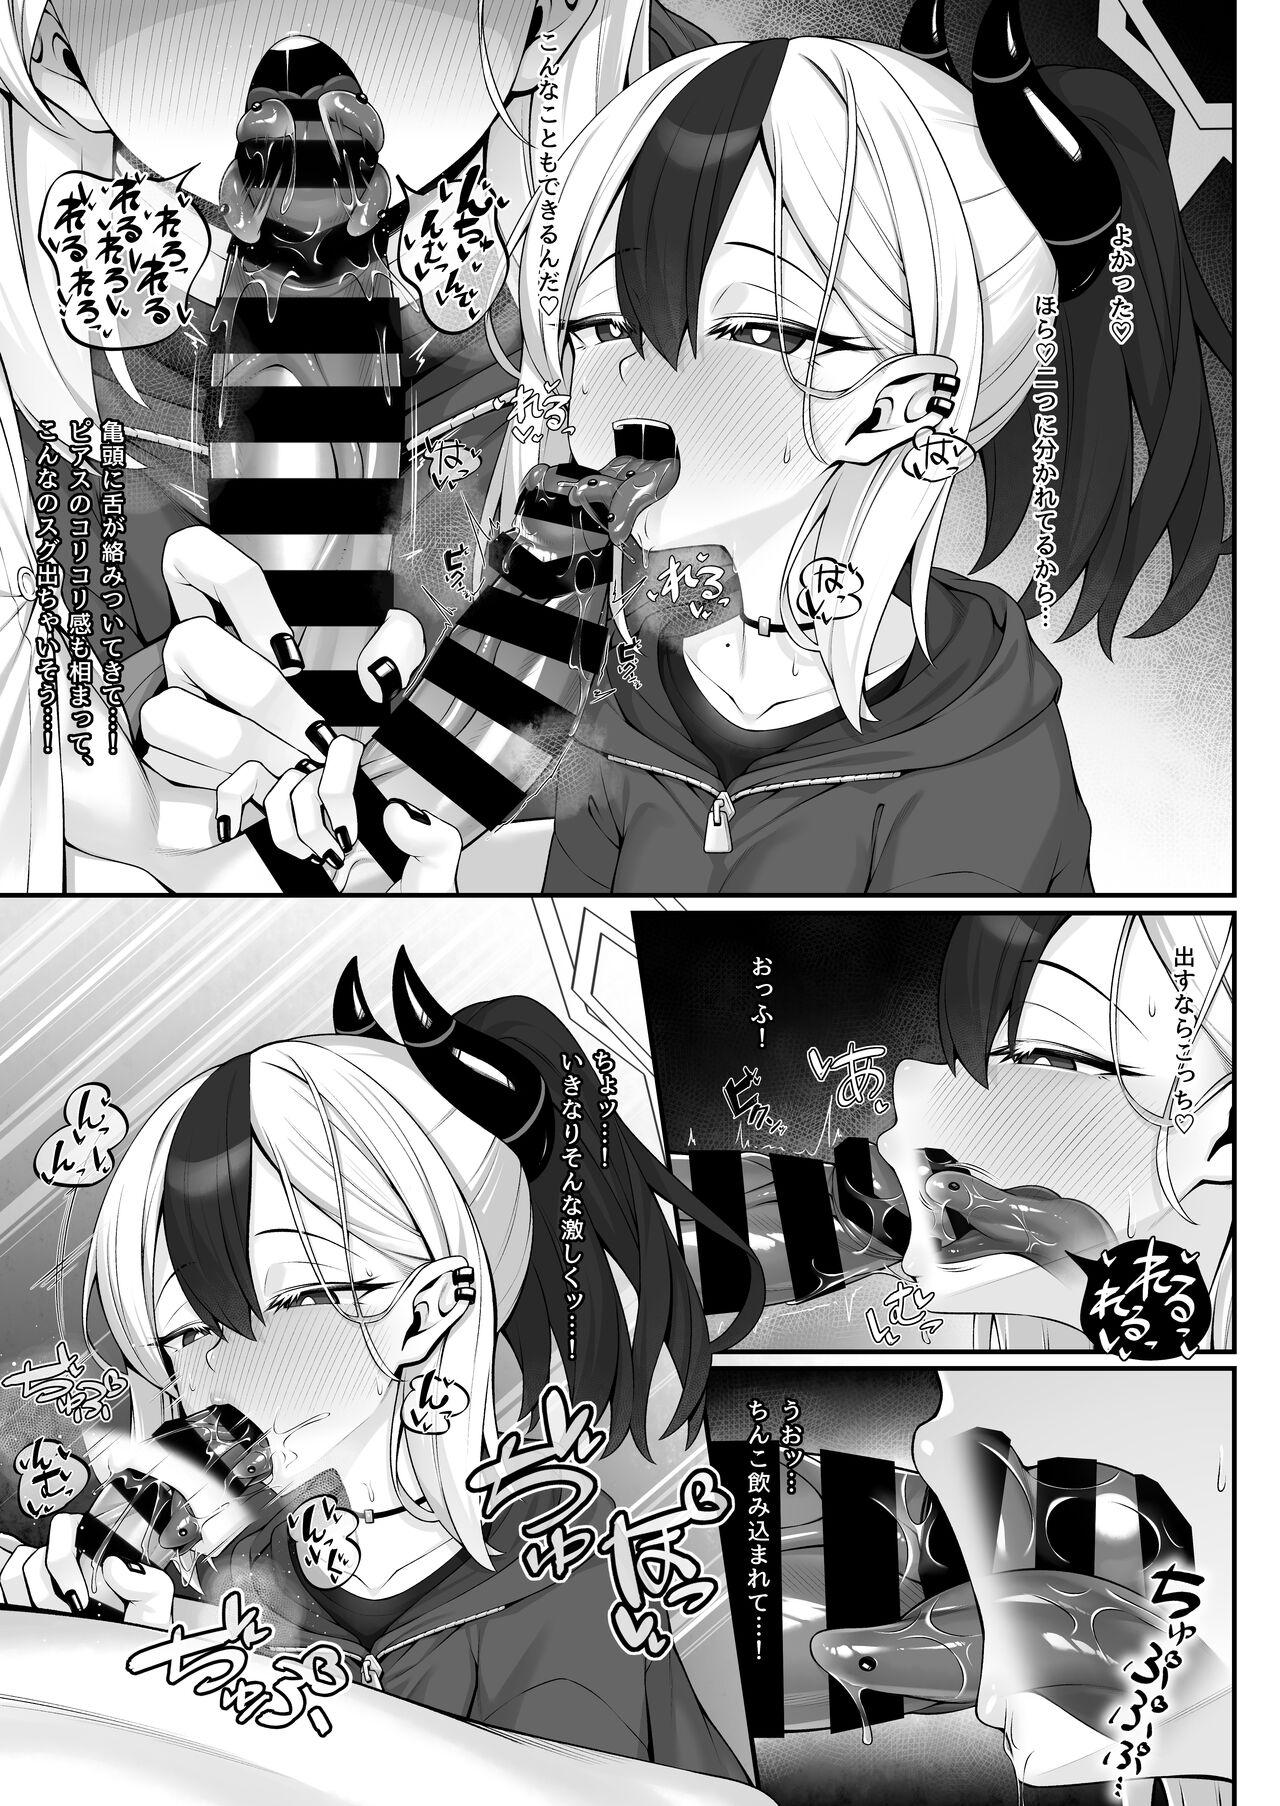 Sputum Shita-pi Kayoko ni Fella de Nuite Morau dake no Tanpen Manga 3